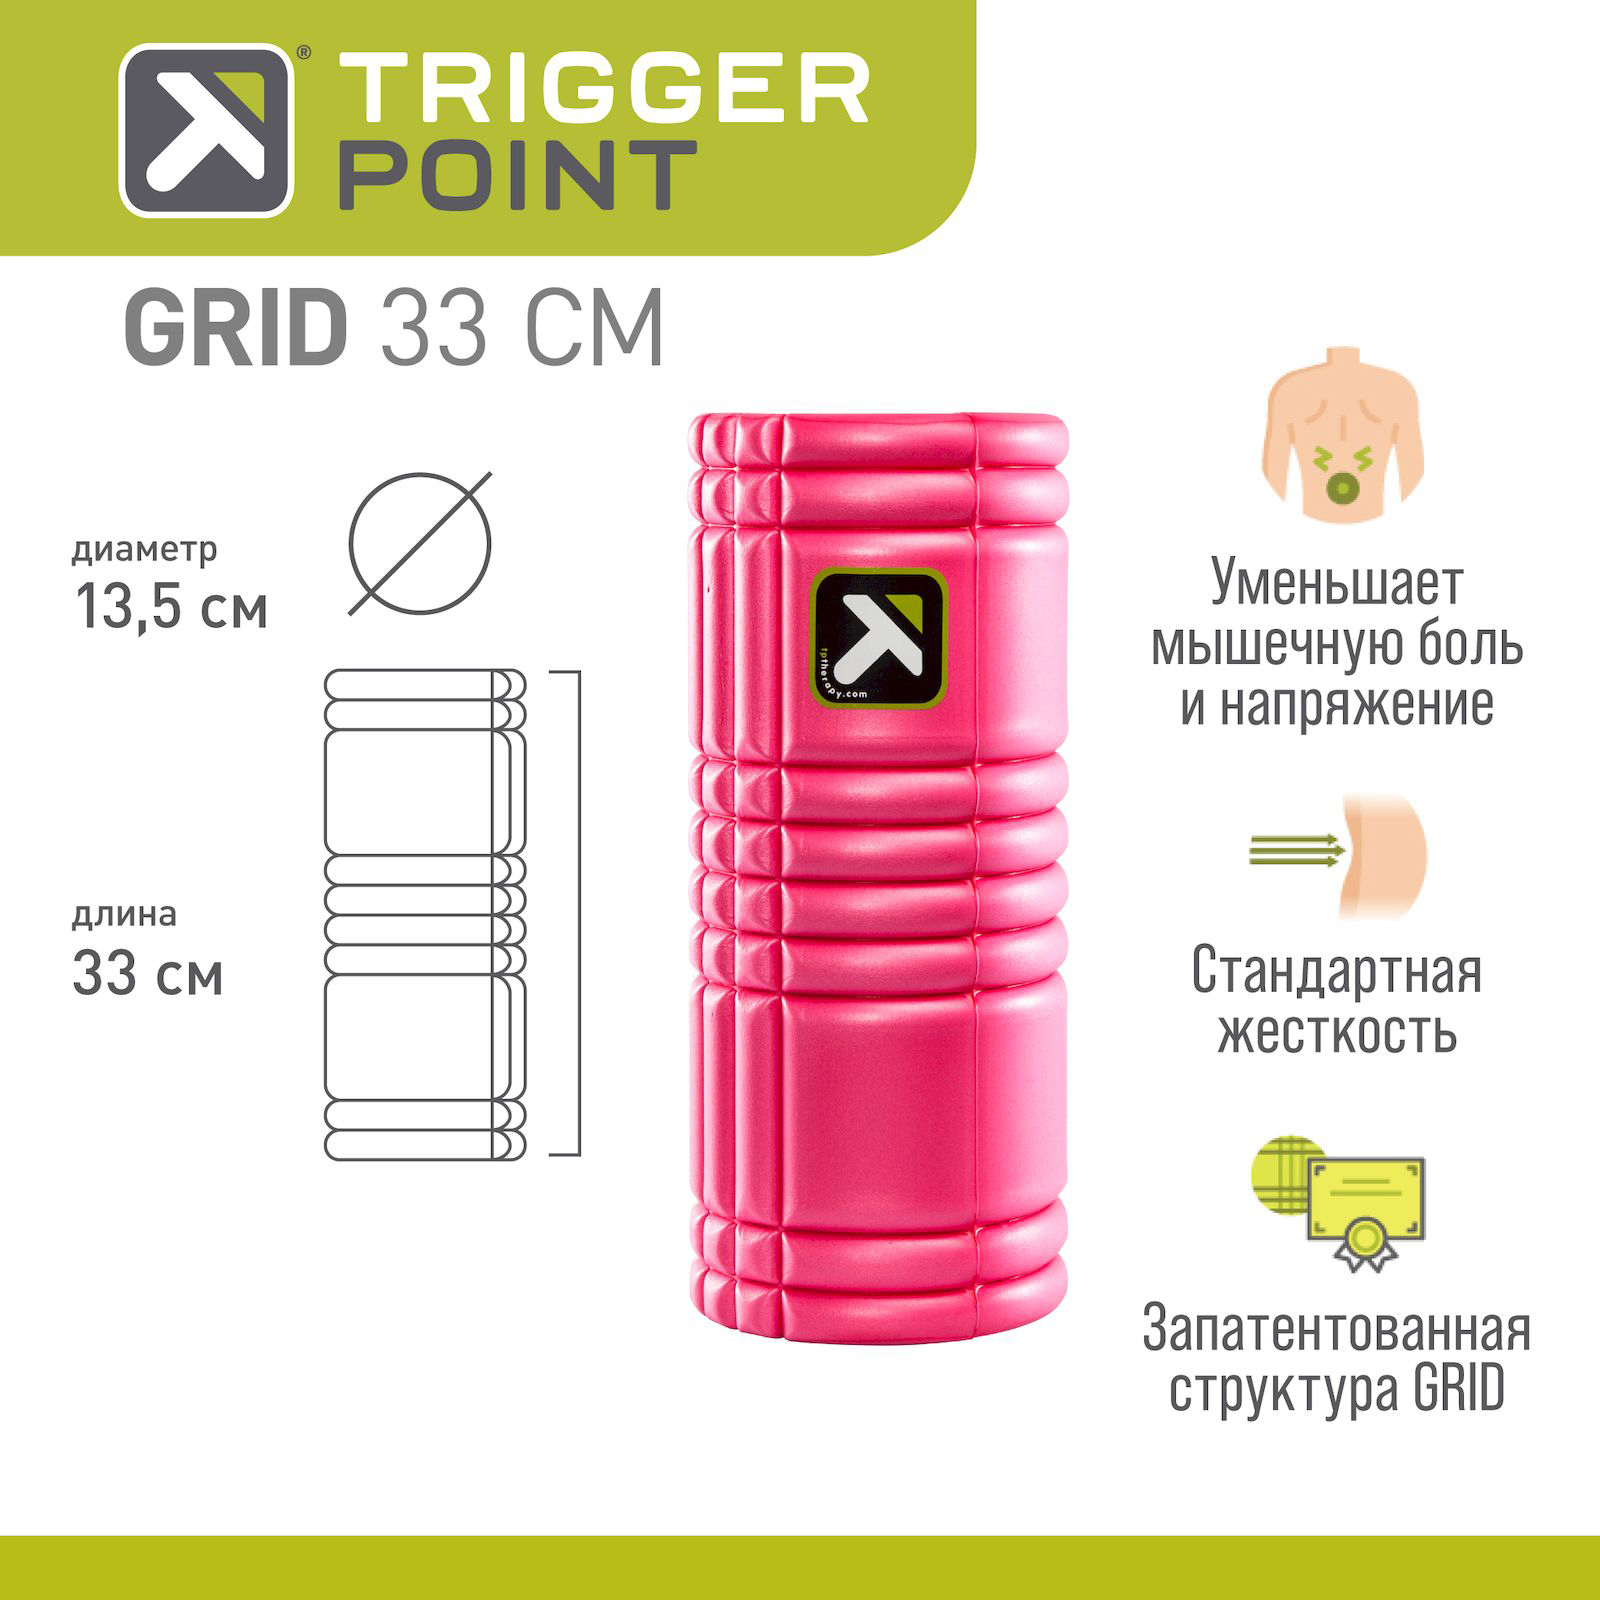 Ролик для йоги и пилатеса Trigger Point Grid 1.0 33x15 см, розовый